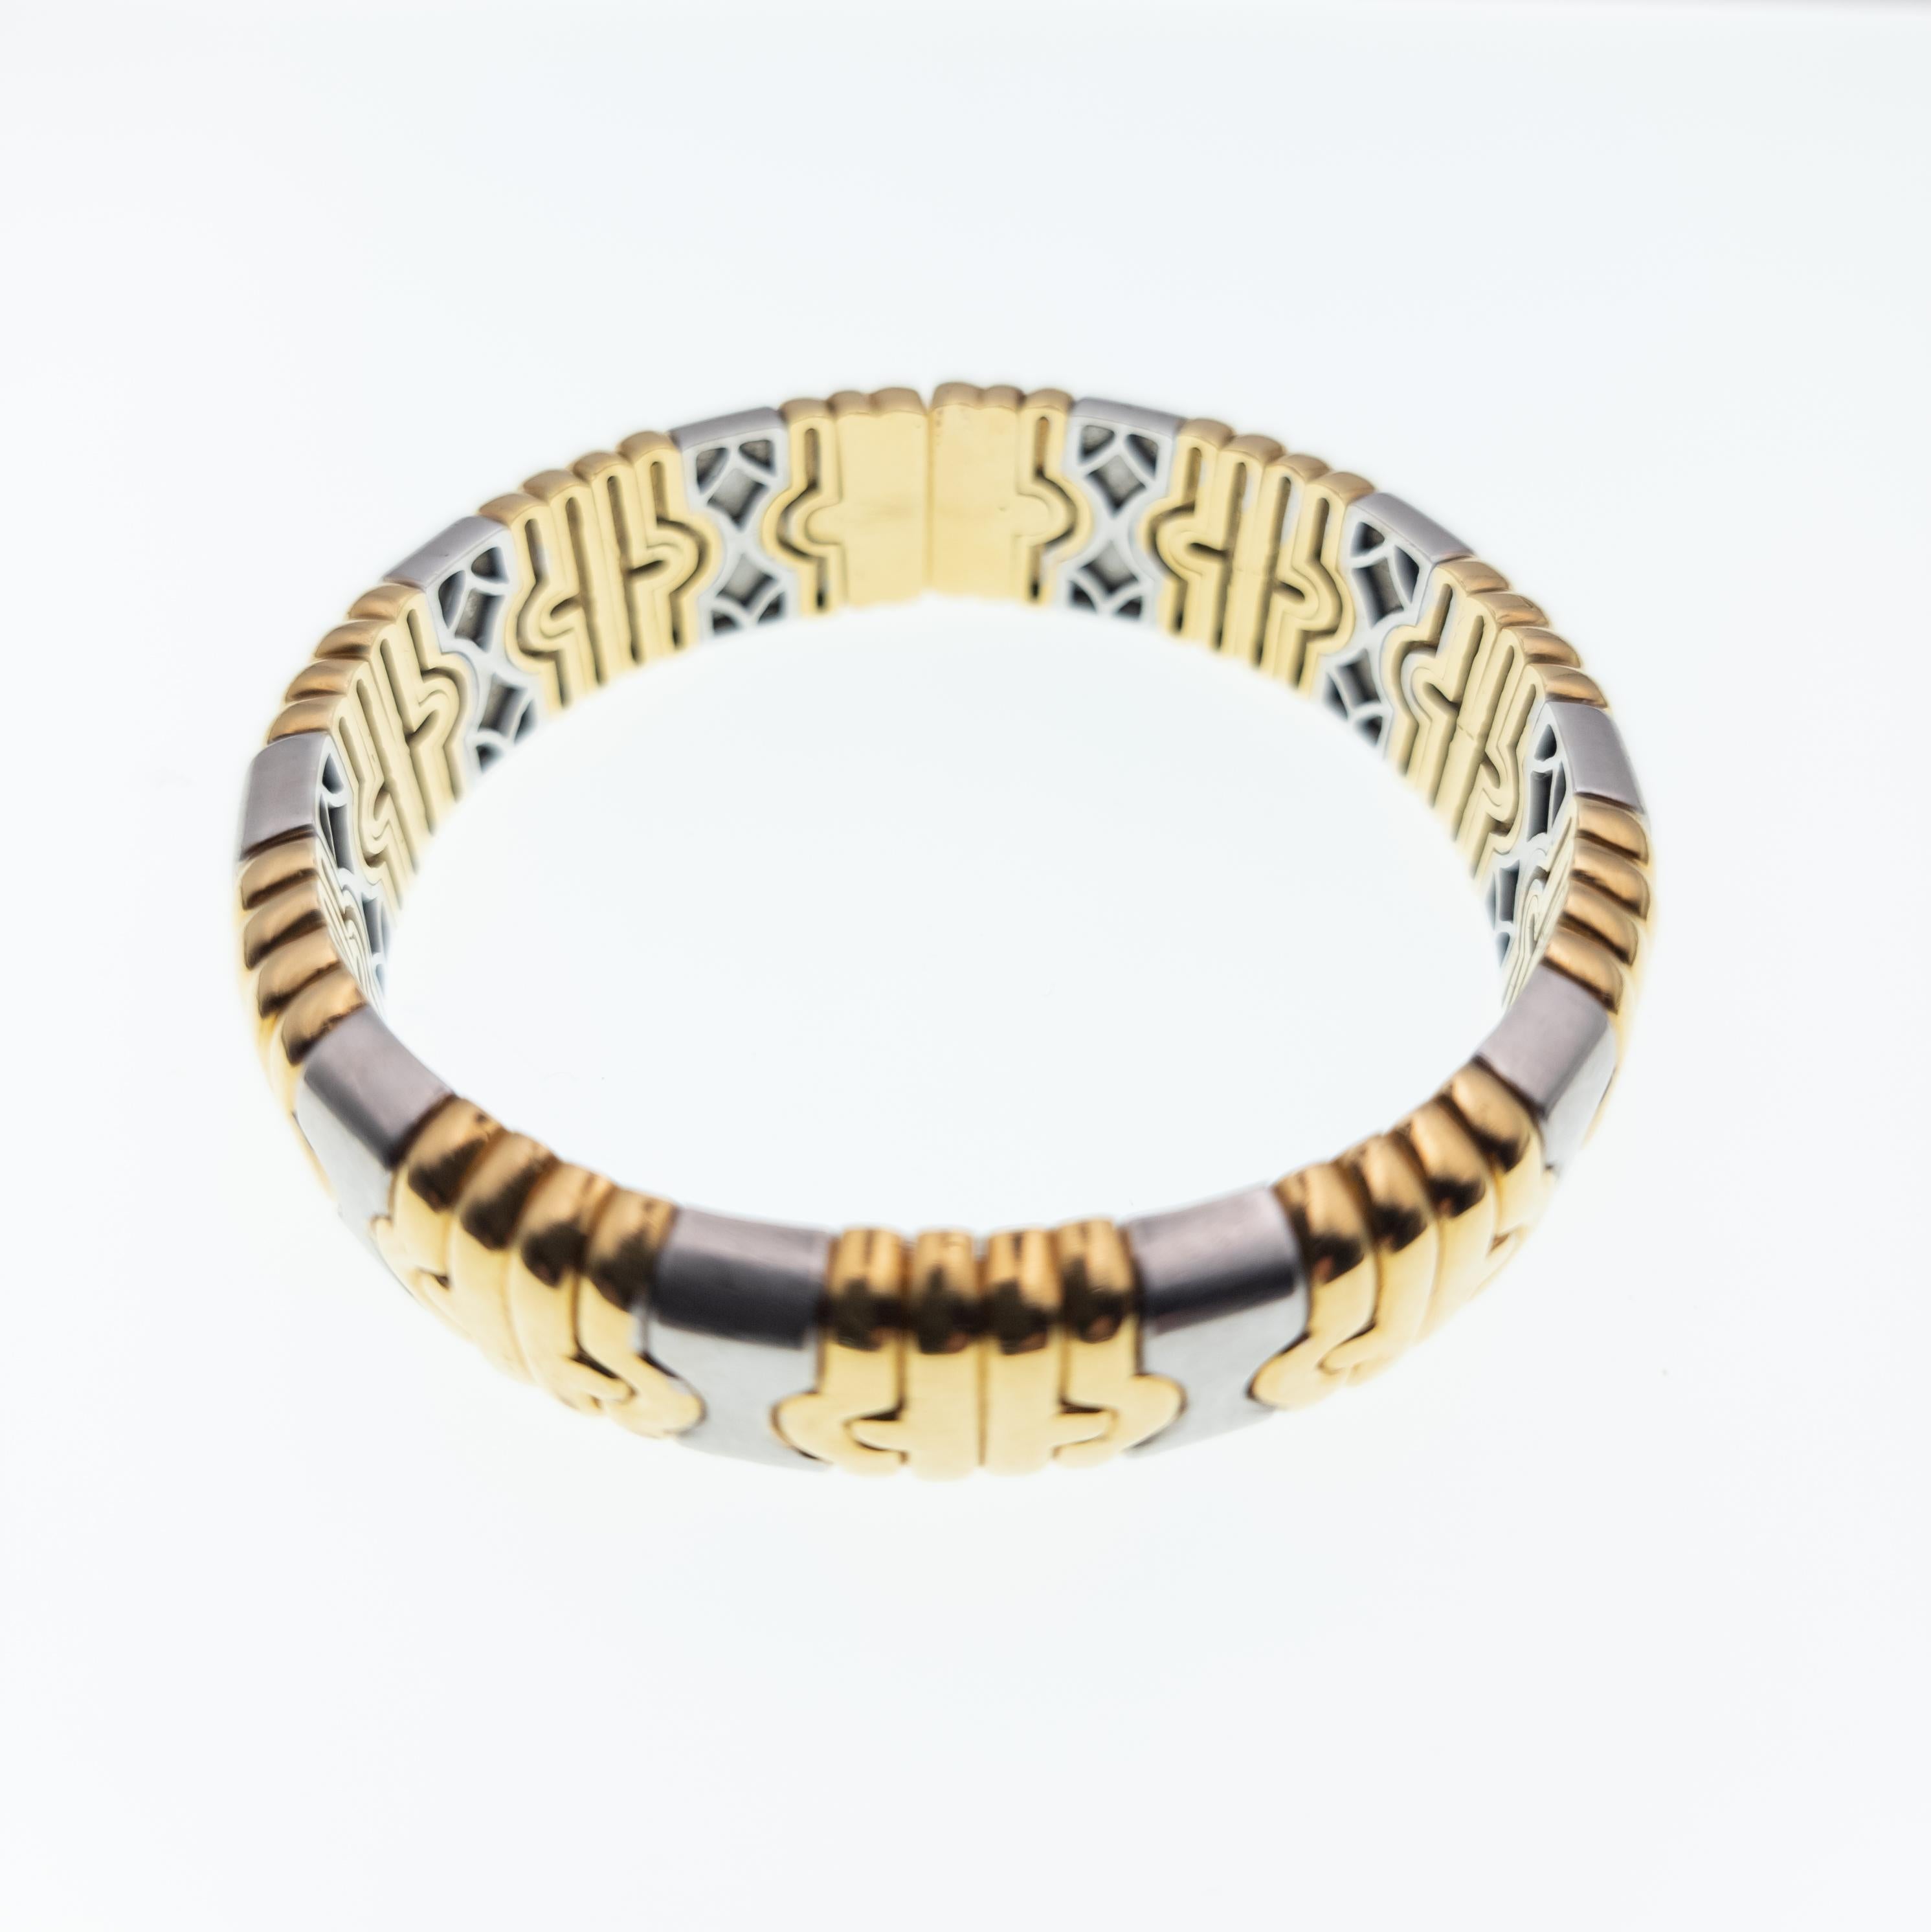 Ce bracelet classique à charnière bicolore en or jaune 18 carats et acier inoxydable a été acheté en Italie au milieu des années 1980. Elle a probablement été fabriquée en Italie, dans la même usine qui fabrique les véritables pièces de haute